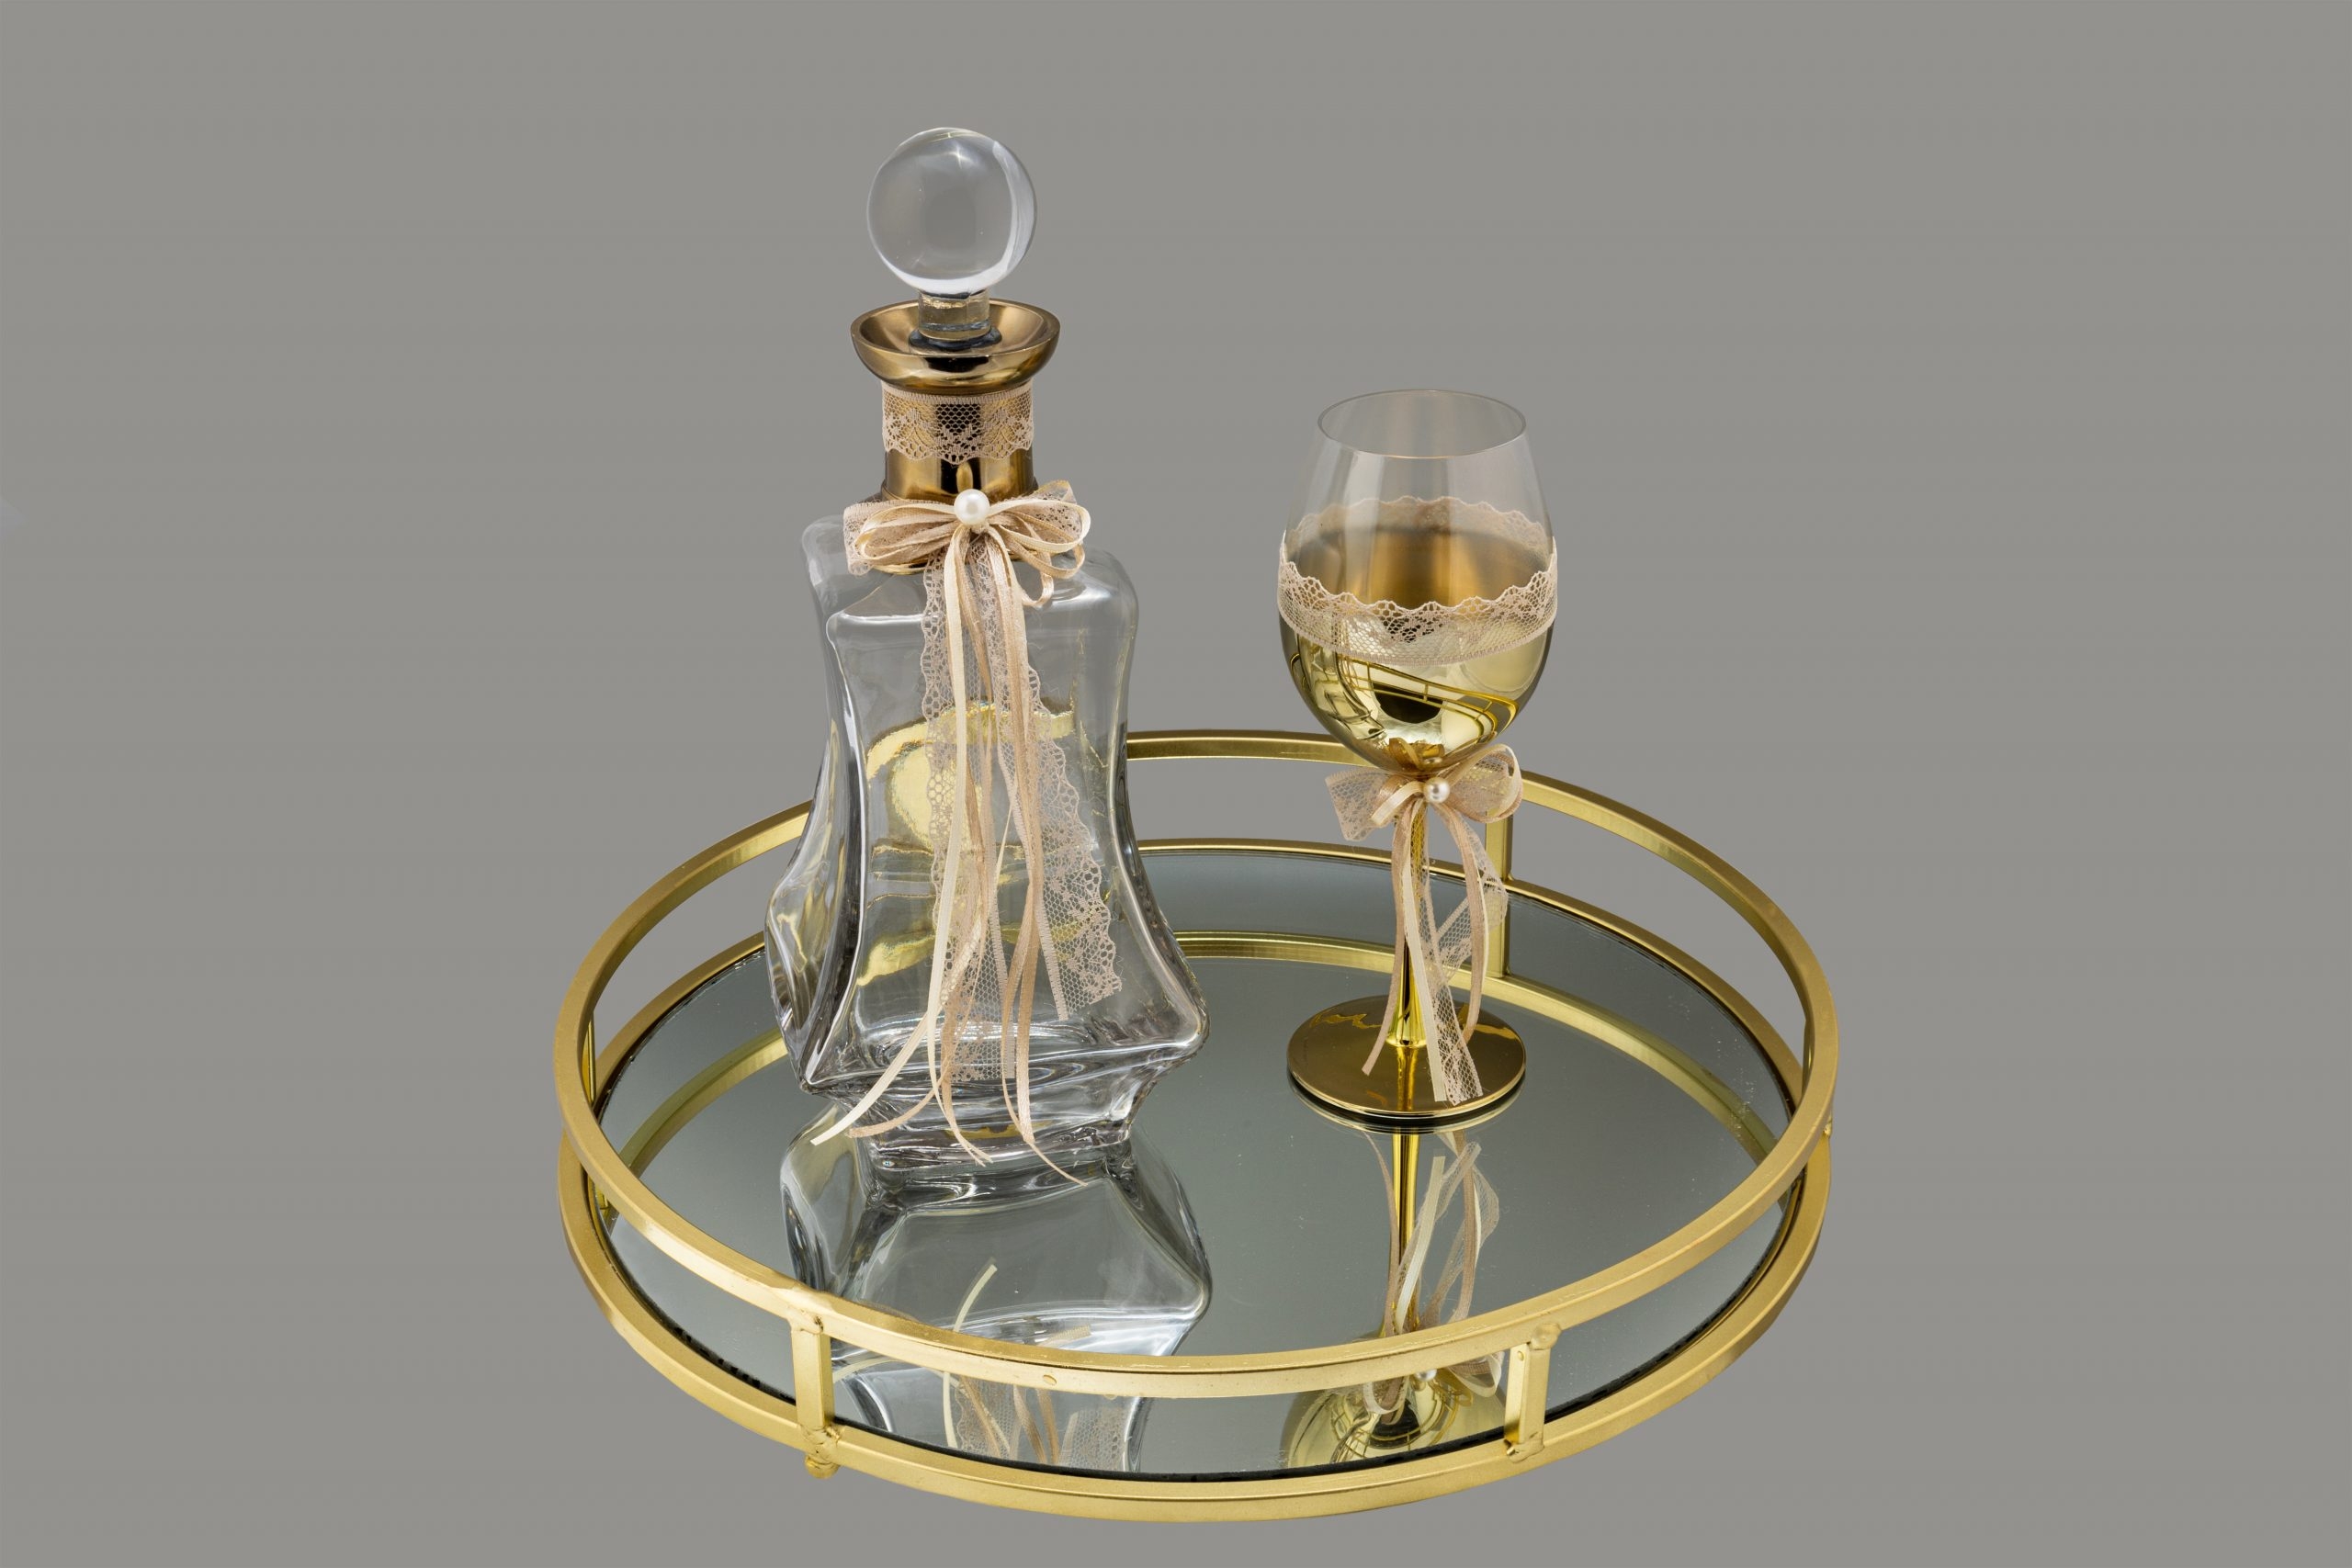 σετ κουμπάρου γάμου δίσκος με καθρέφτη vintage ποτήρι καράφα χρυσό : 1